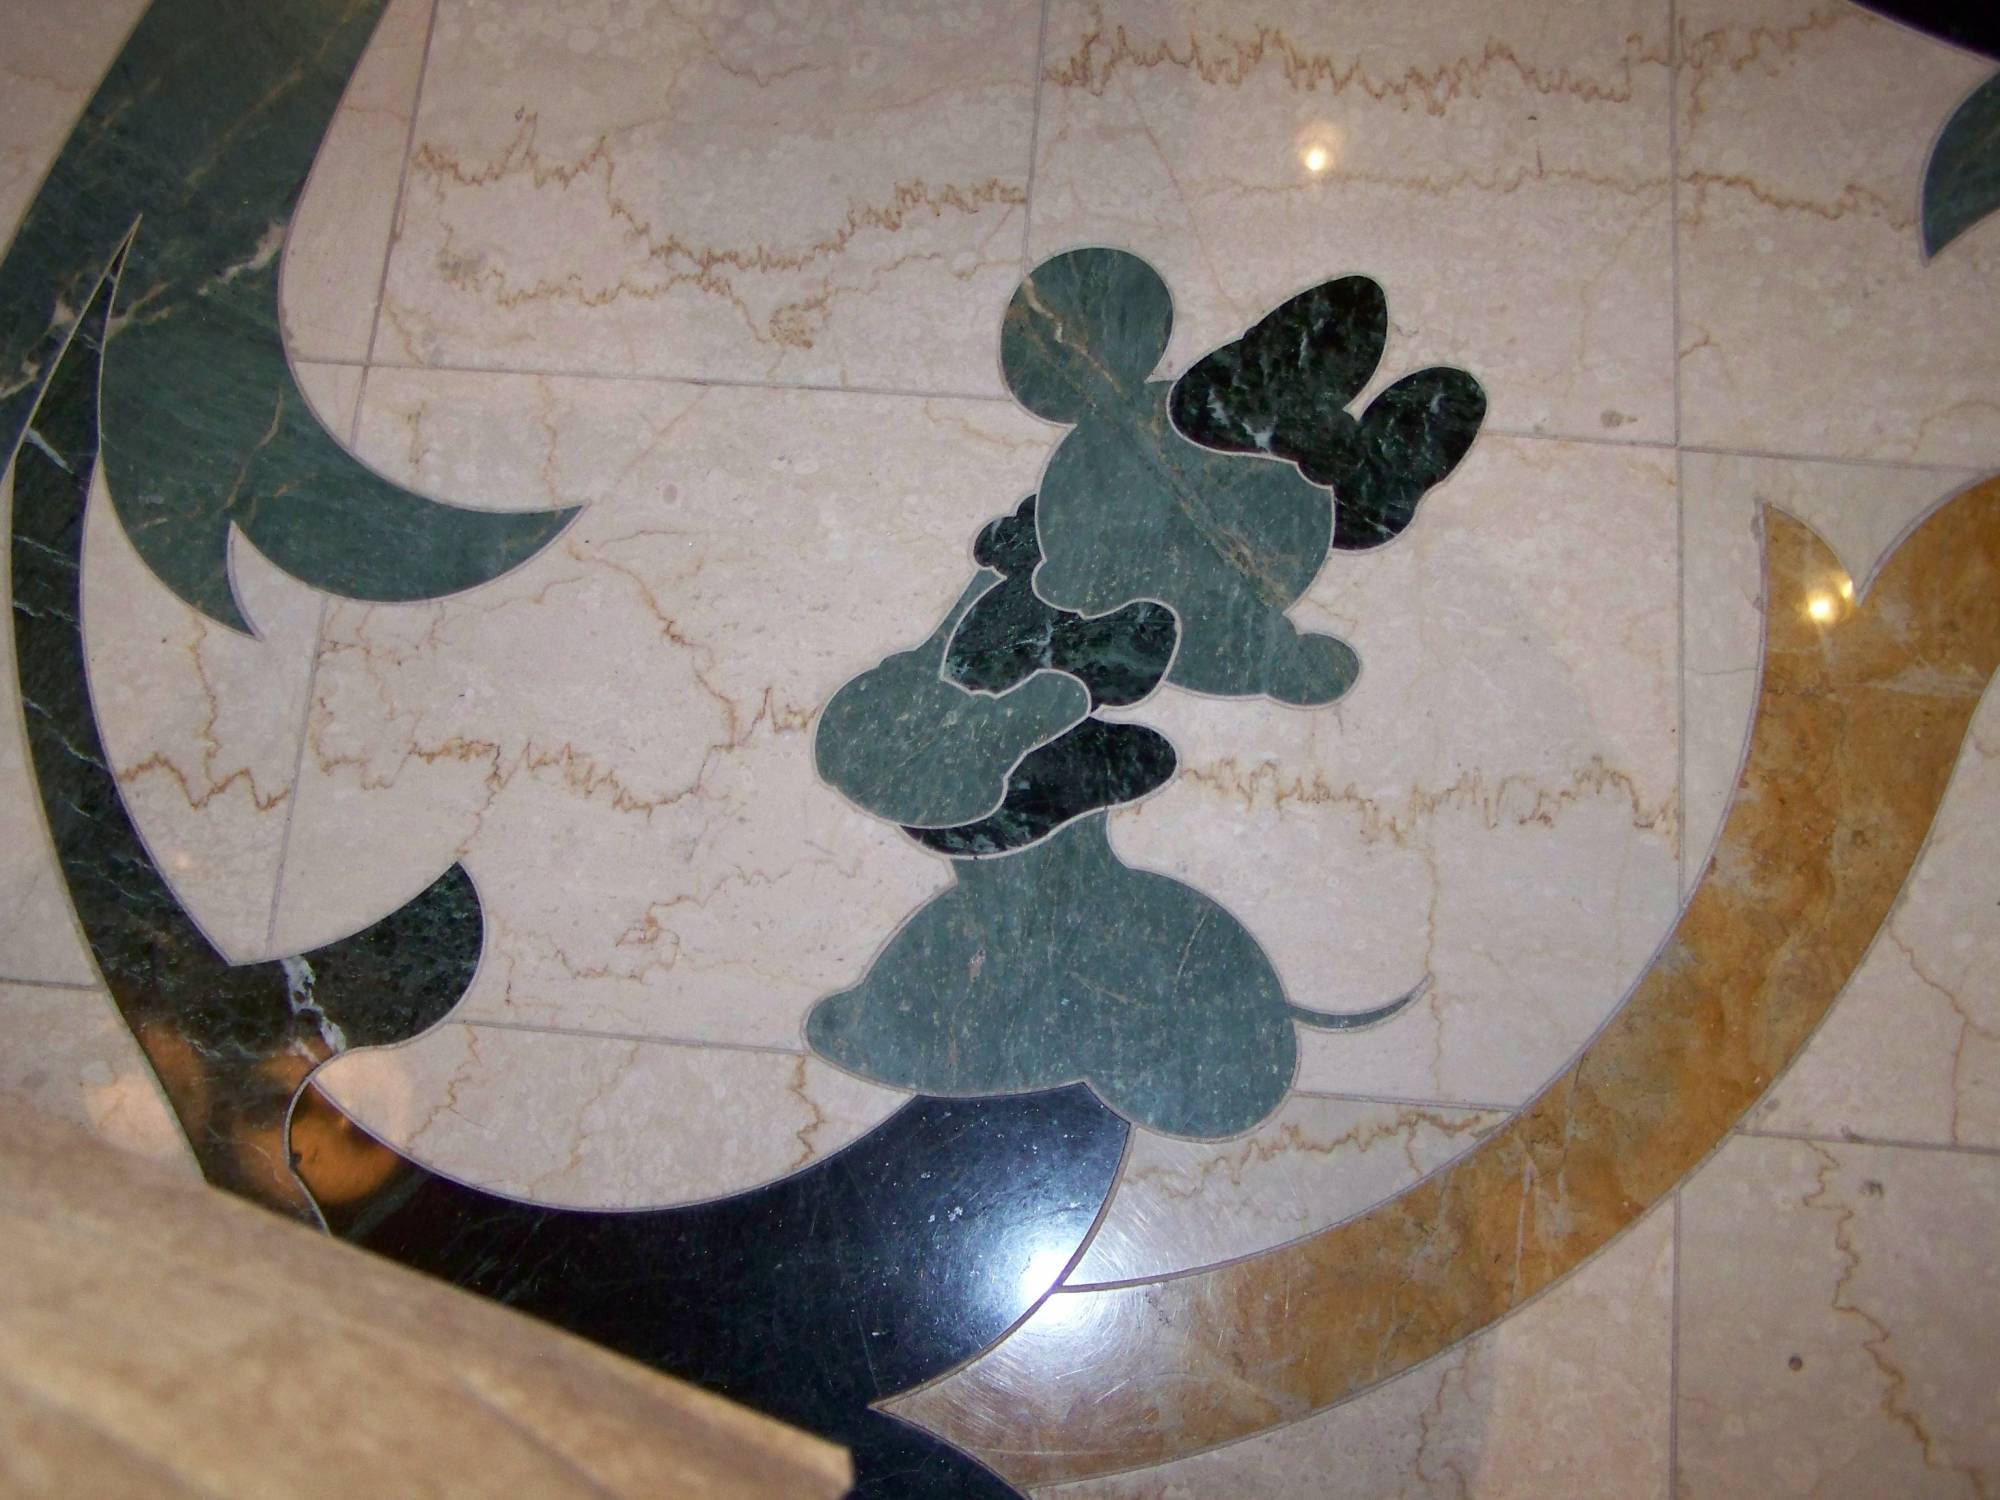 Grand Floridian Floor Lobby Minnie